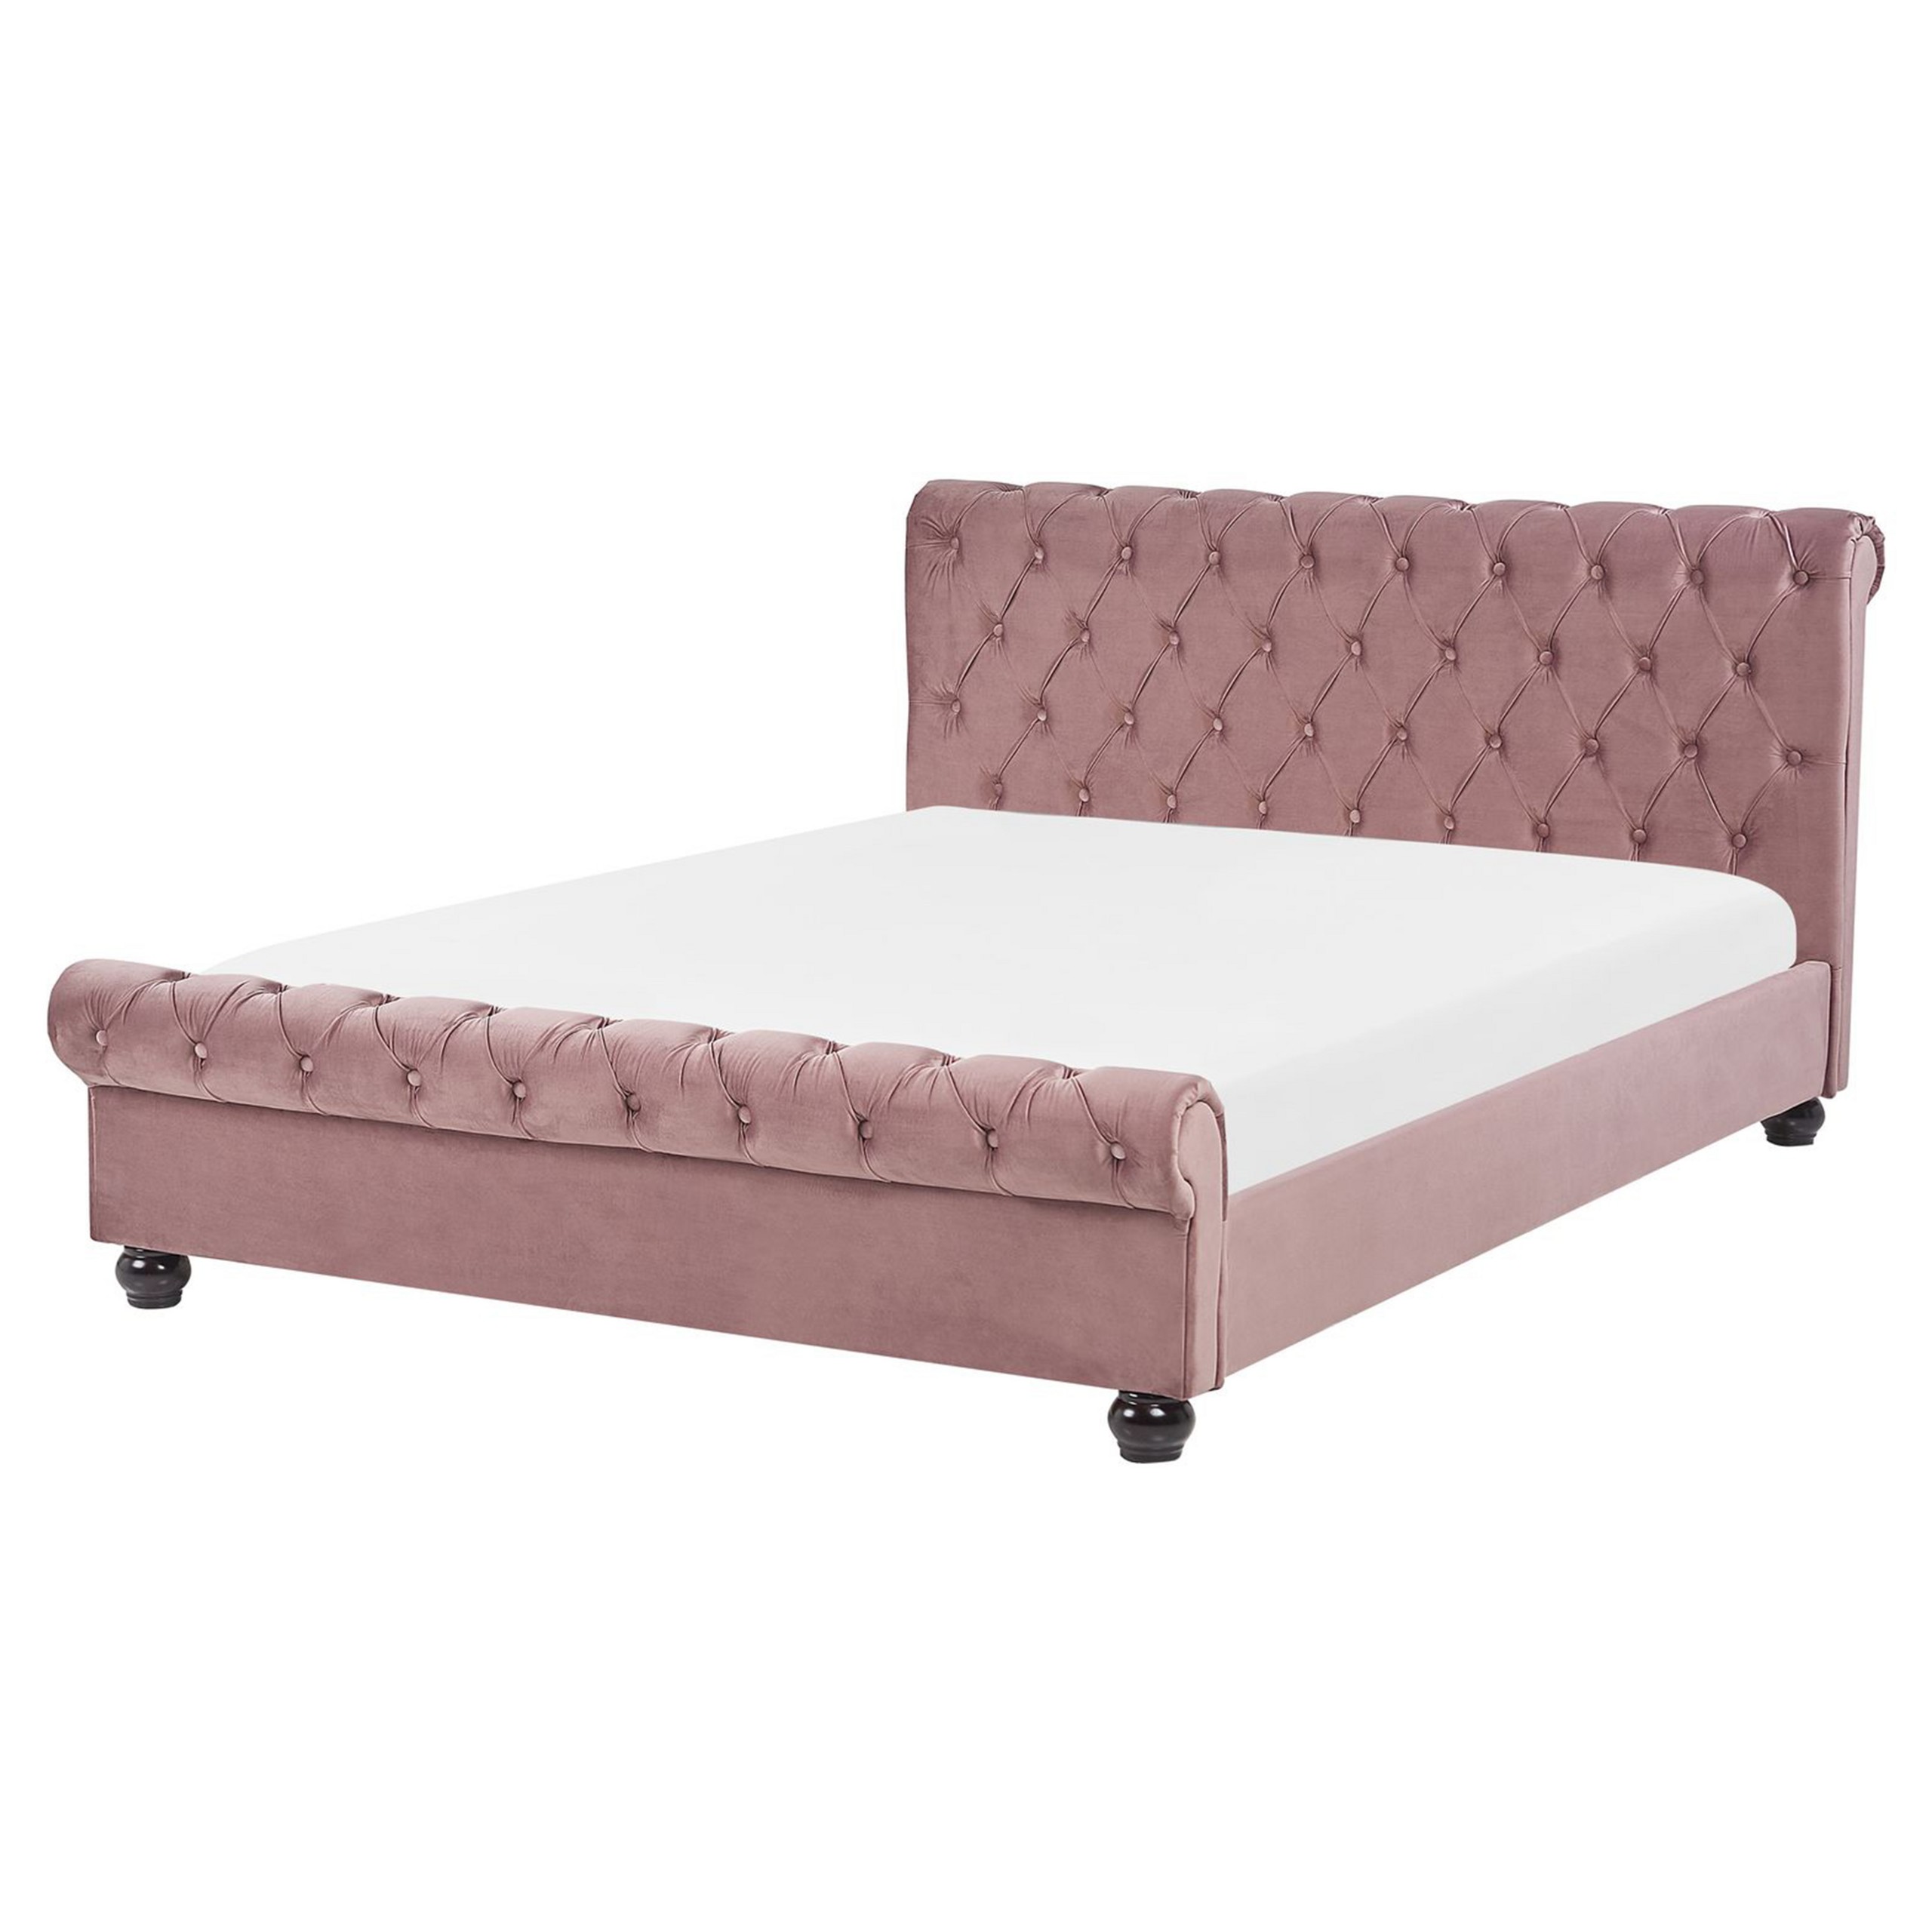 Beliani Bed Frame Pink Velvet Upholstery Black Wooden Legs King Size 5ft3 Buttoned Glam